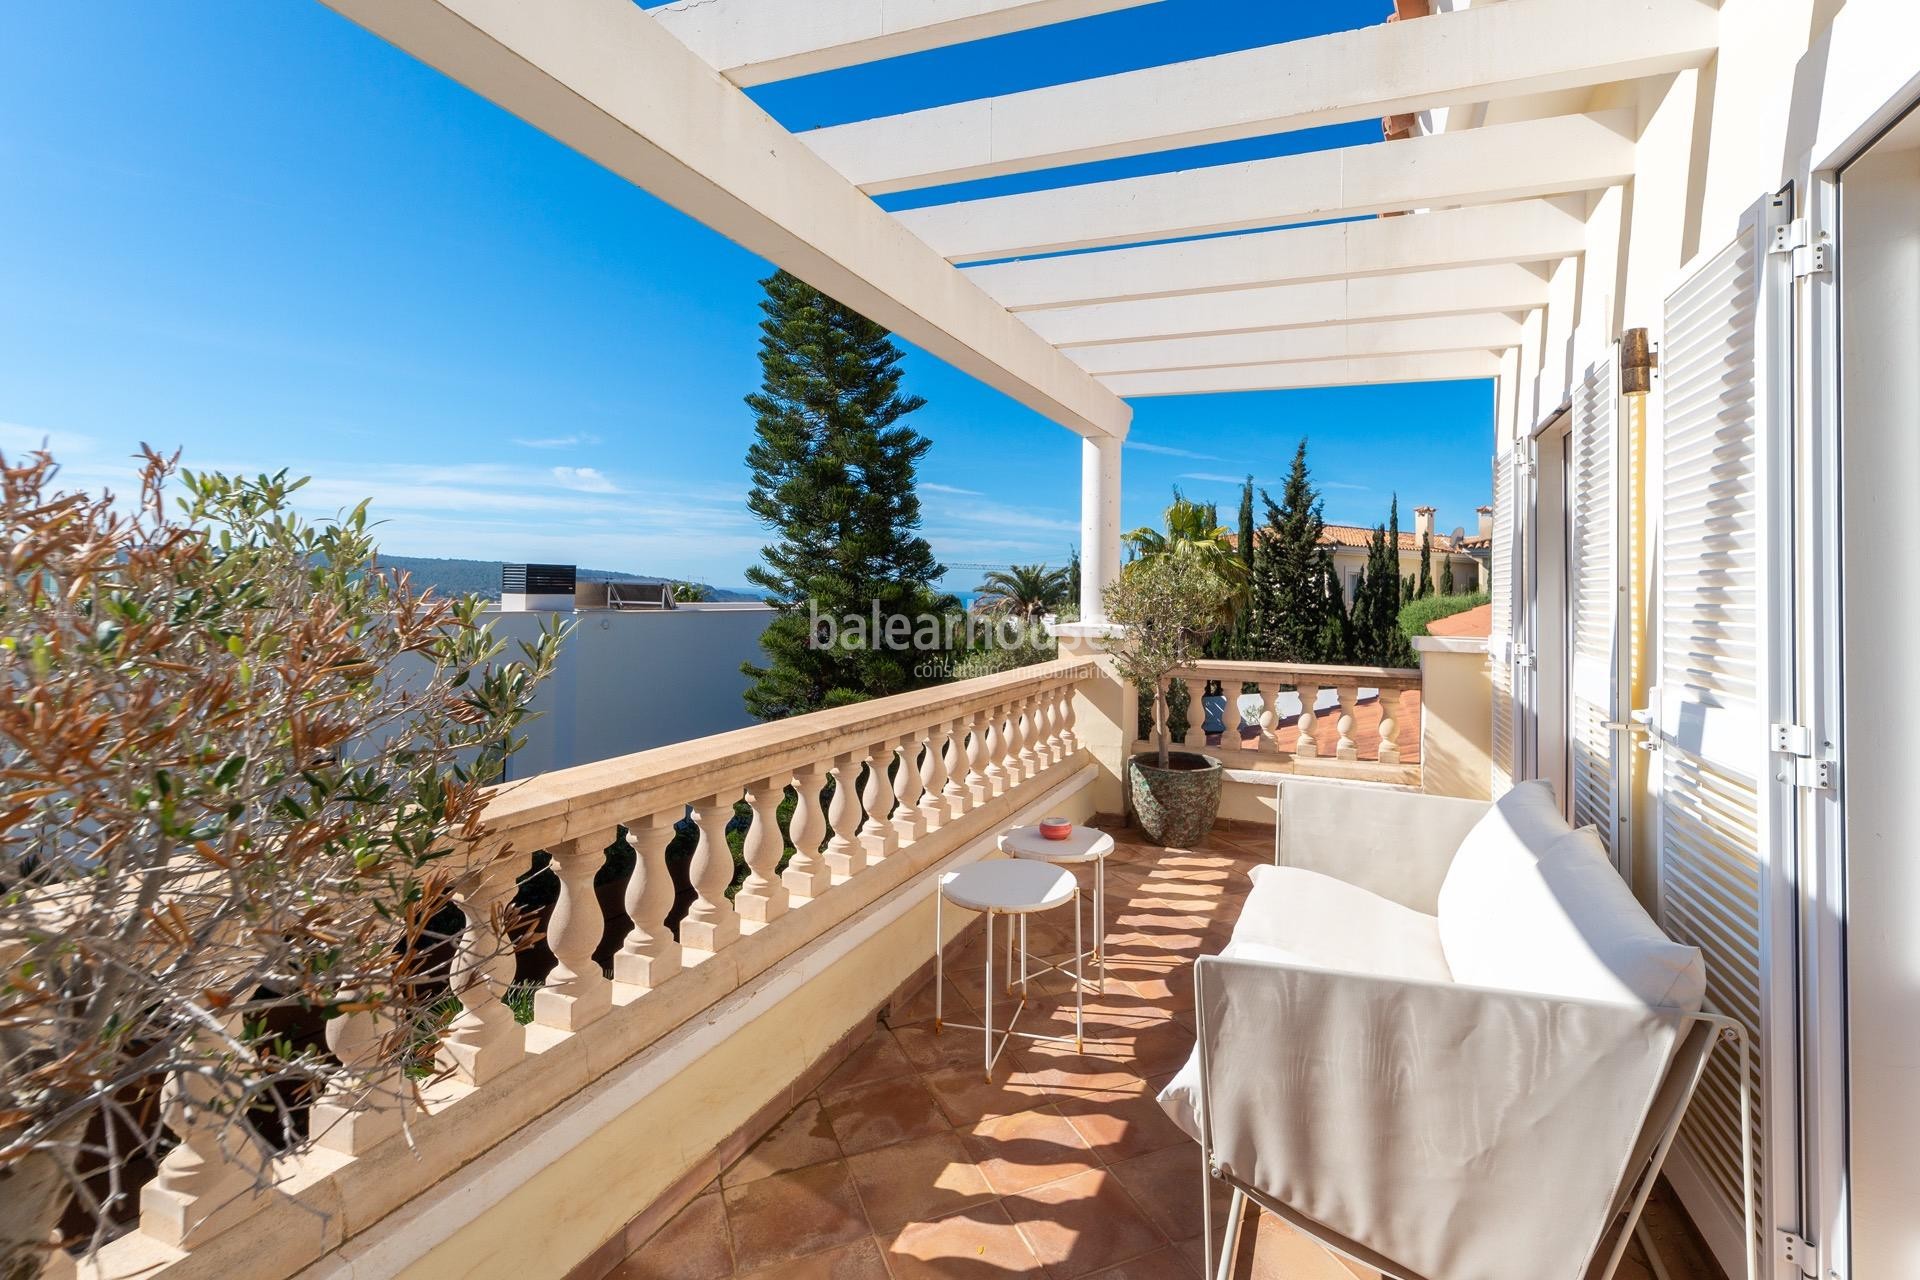 Geräumige mediterrane Villa in Santa Ponsa, offen zu Terrassen und großen Gärten mit Pool